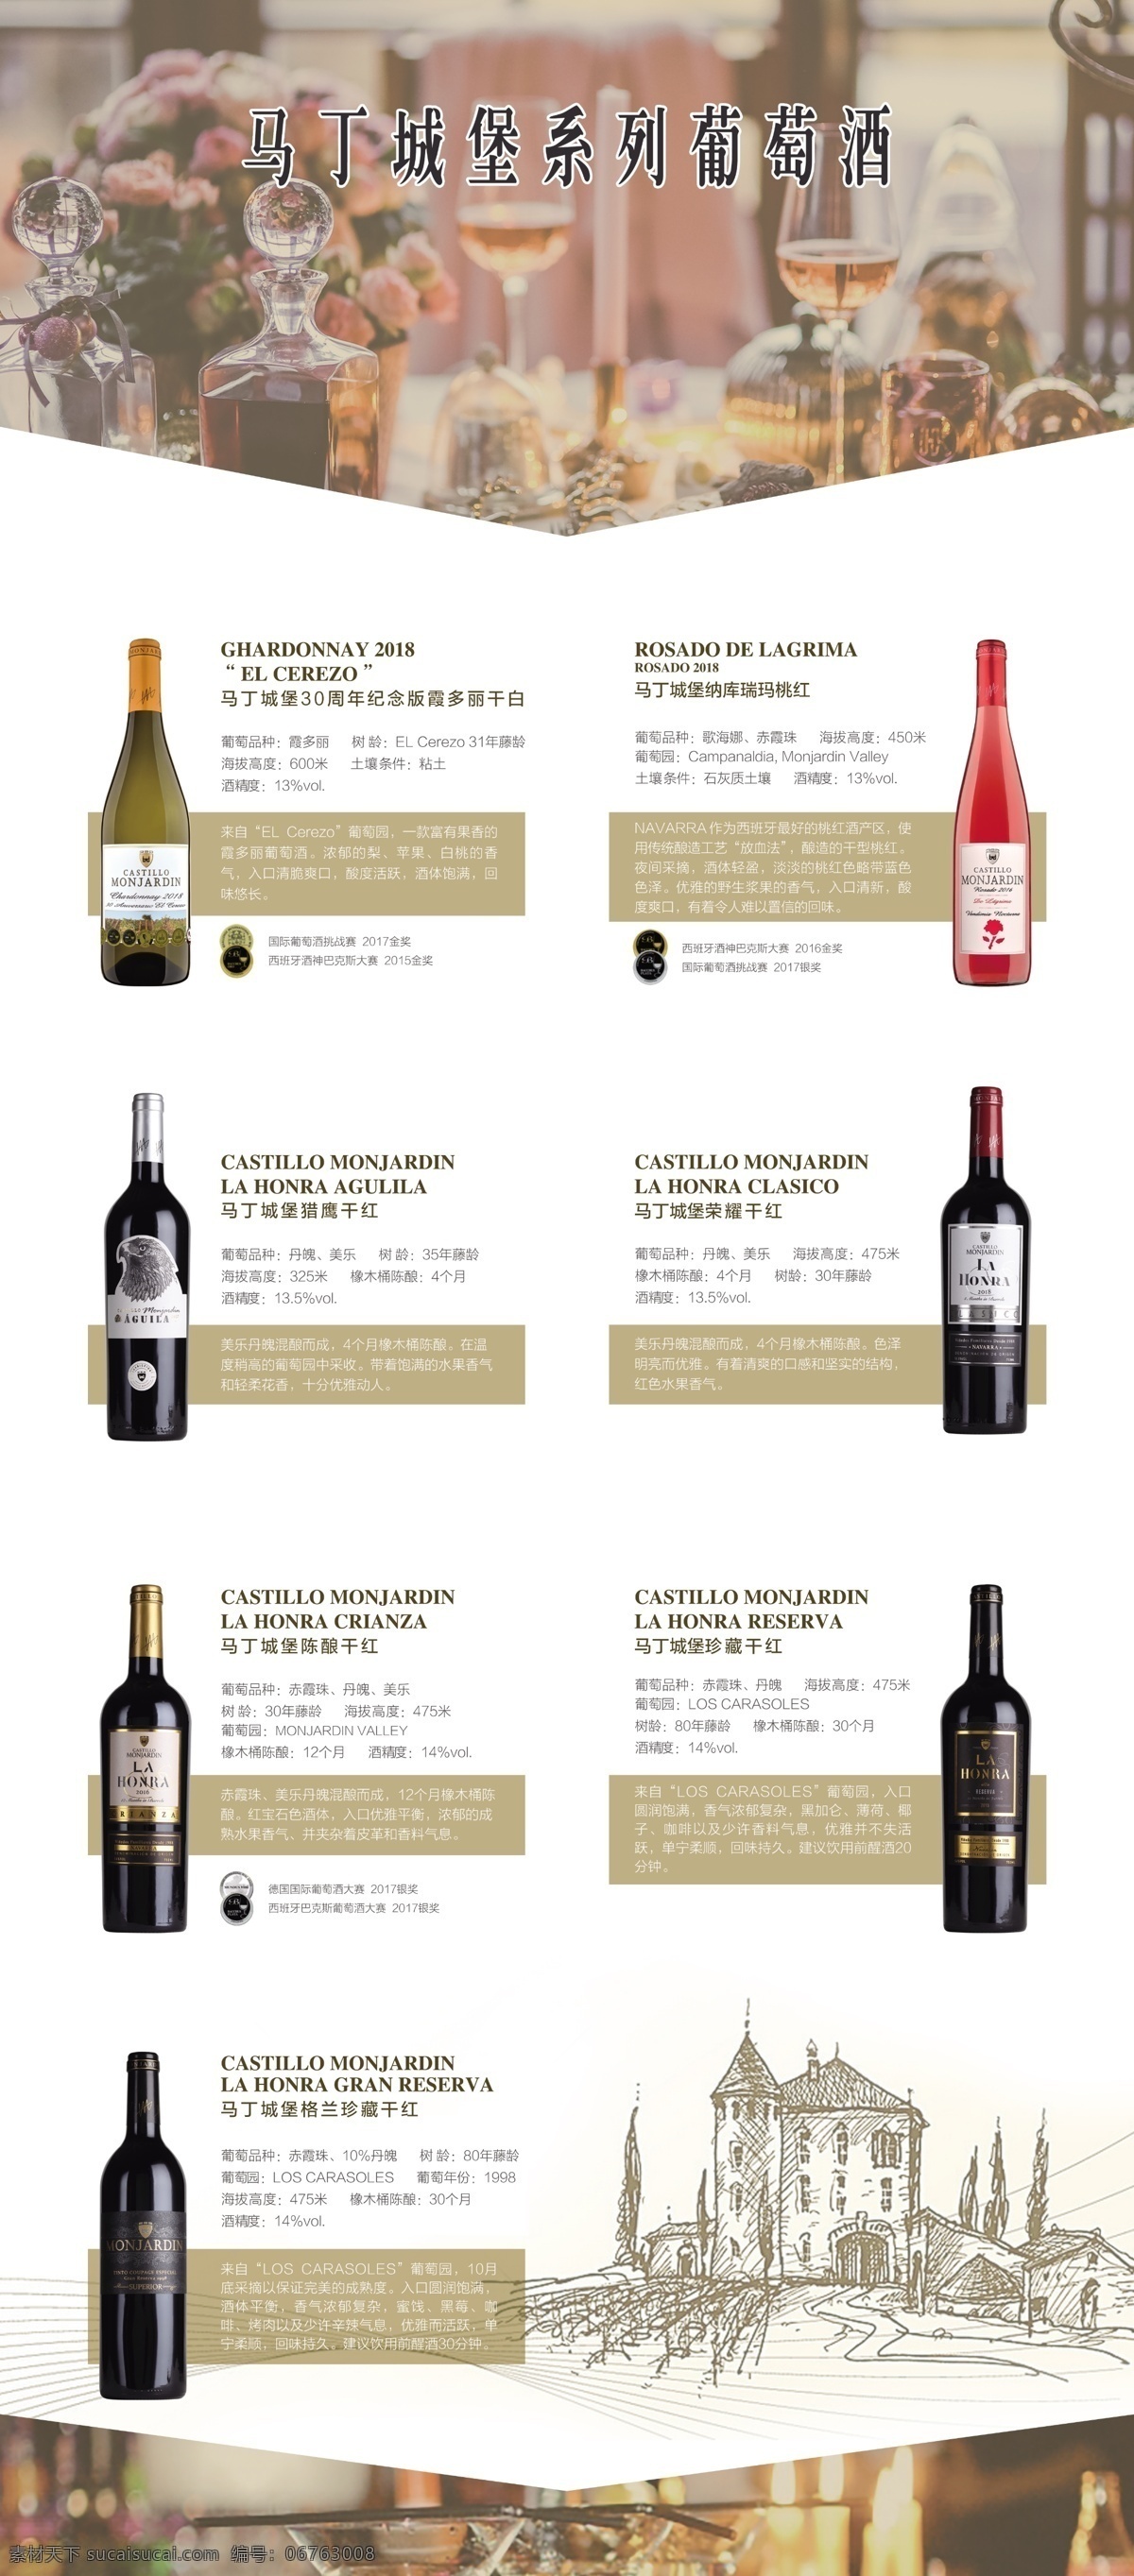 葡萄酒 产品 信息 展架 易拉宝 海报 红酒 产品信息 宣传海报 酒水类海报 分层